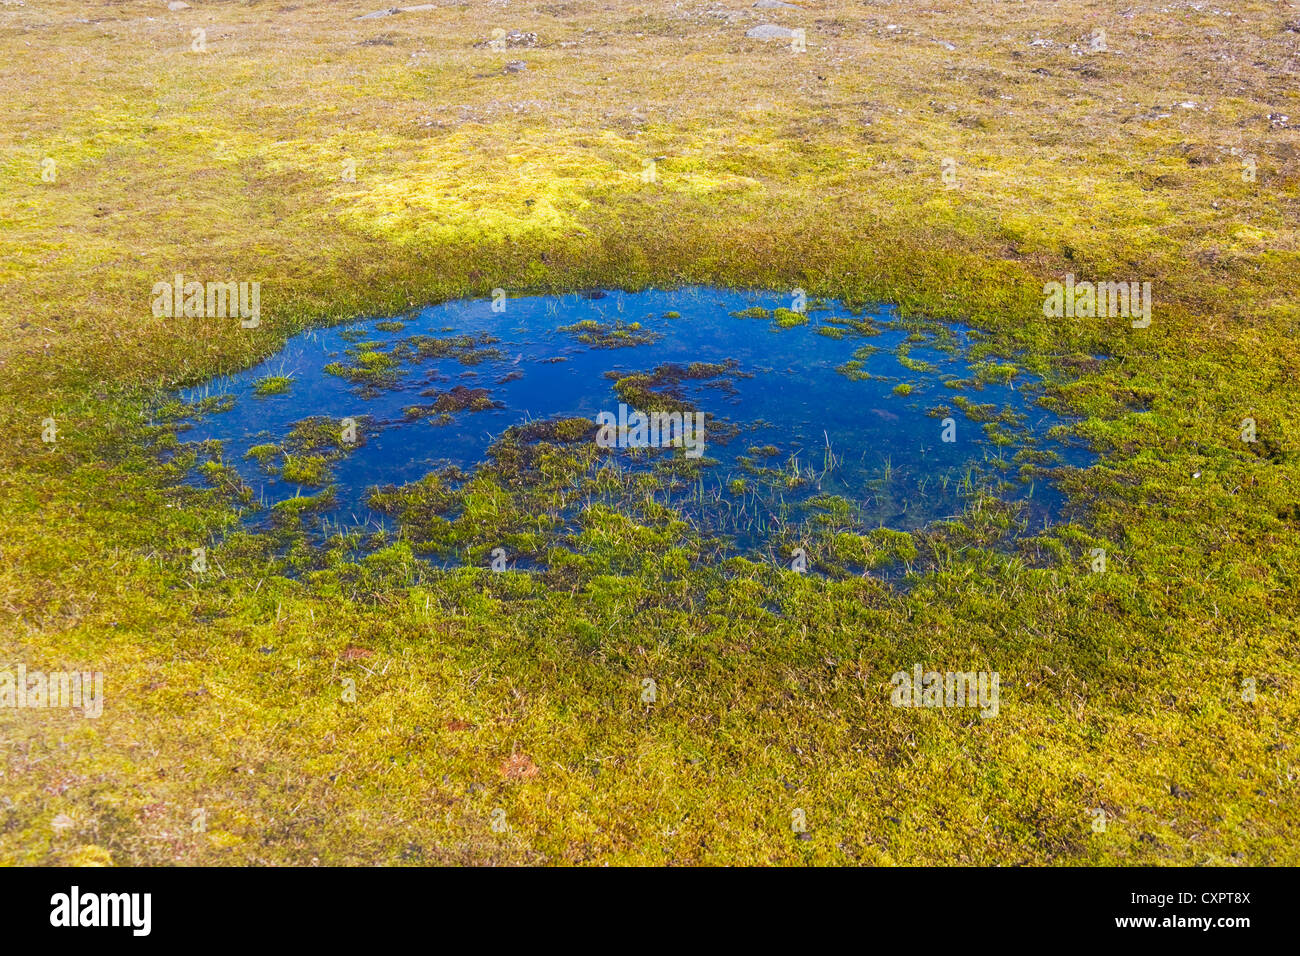 Tundra vegetation, Sundneset, Barentsøya, Spitsbergen, Norway Stock Photo